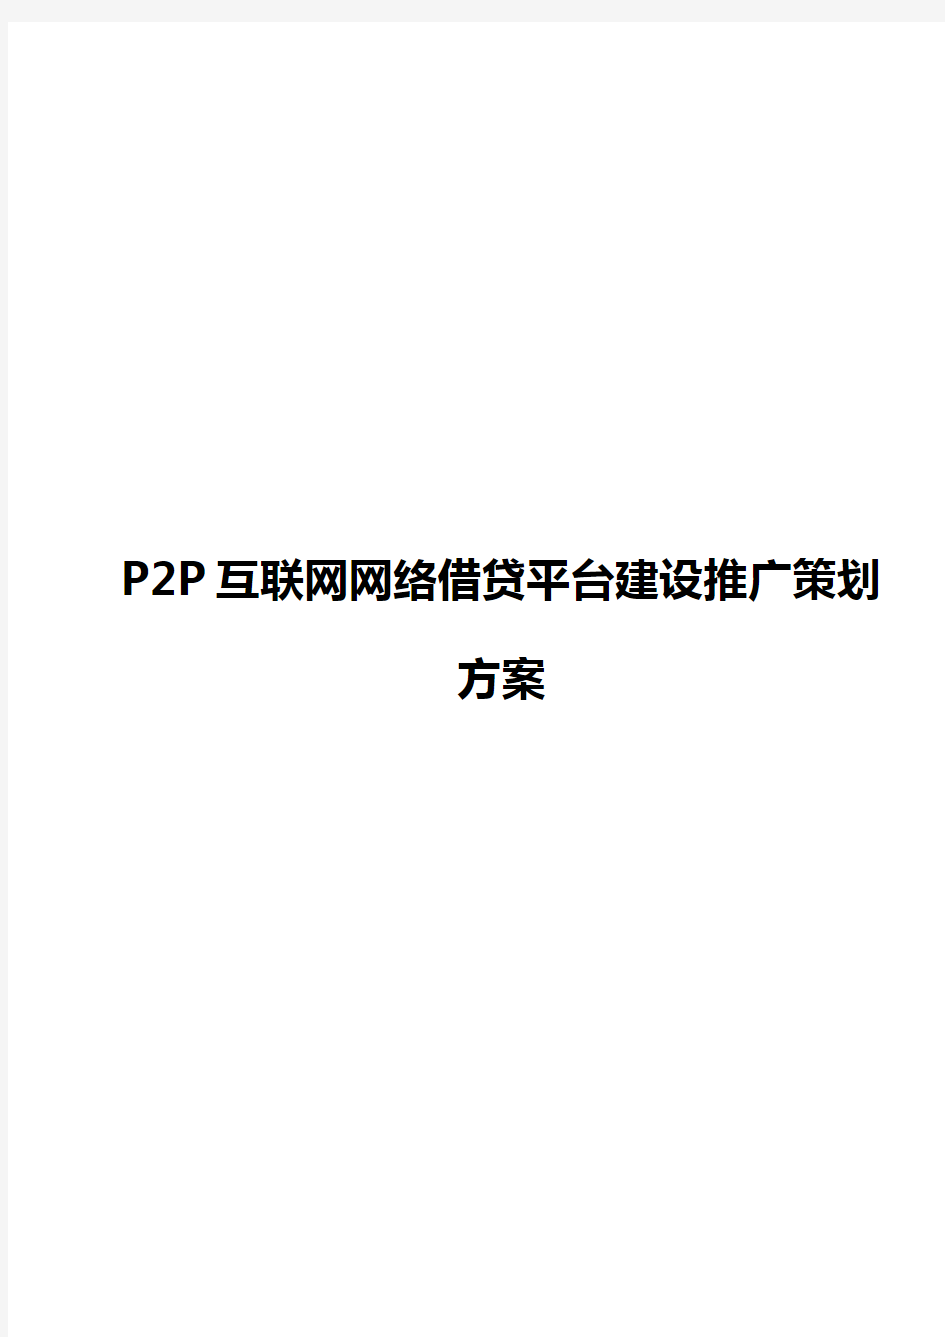 P2P互联网网络借贷平台建设推广项目策划执行方案【完整版】【最终定稿】